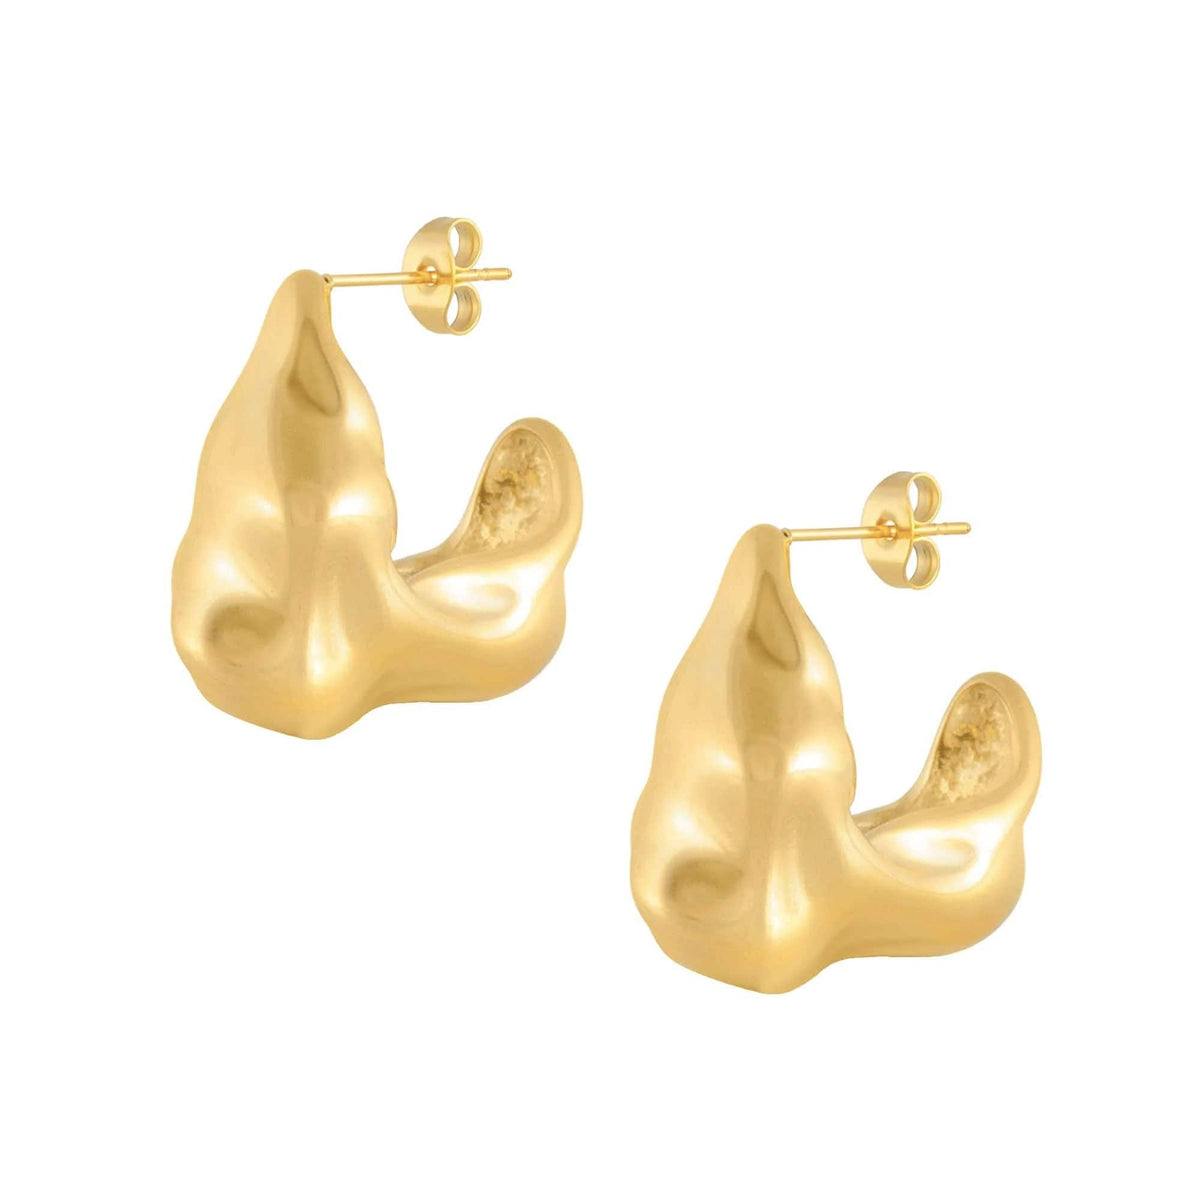 BOHOMOON Stainless Steel Enya Hoop Earrings Gold